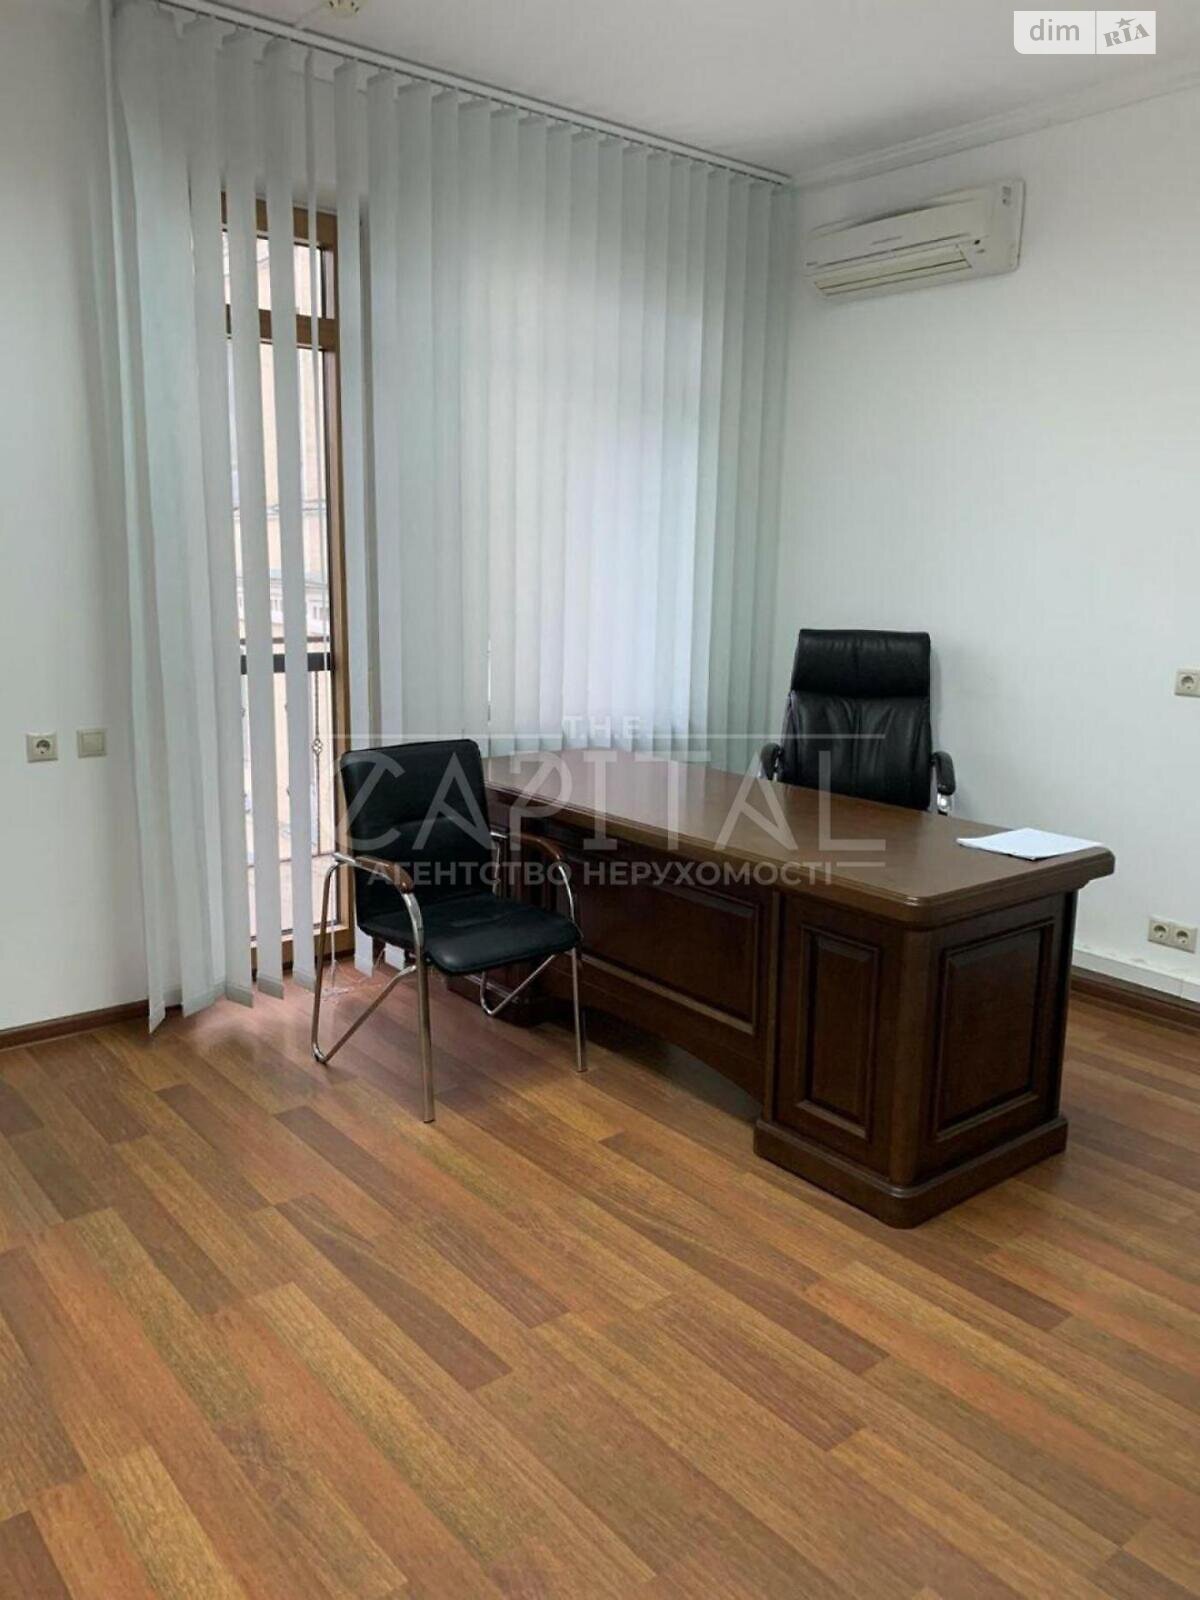 Аренда офисного помещения в Киеве, Крутой спуск 7, помещений - 5, этаж - 3 фото 1